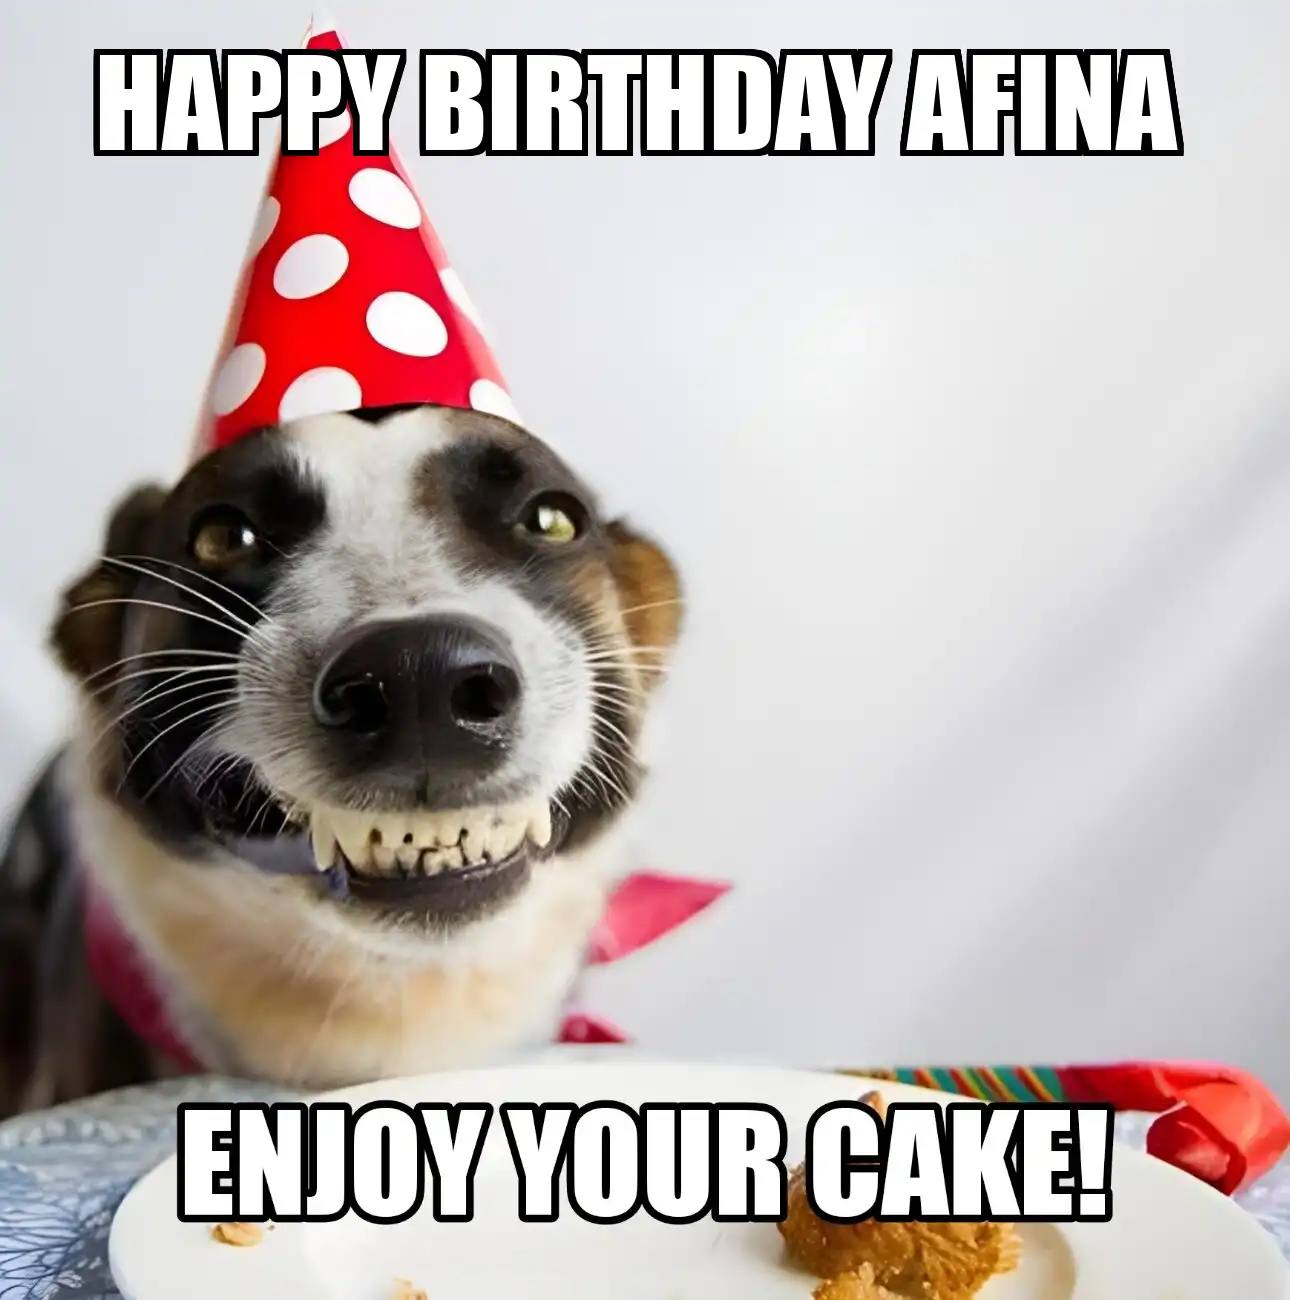 Happy Birthday Afina Enjoy Your Cake Dog Meme